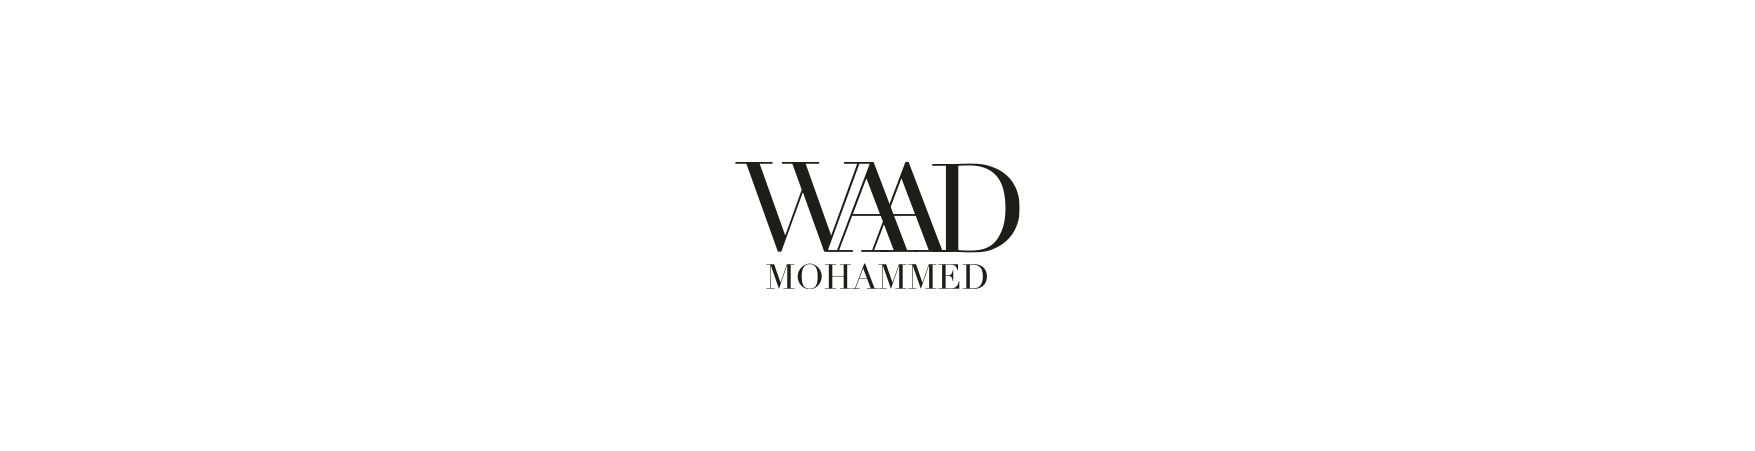 Waad Mohammed